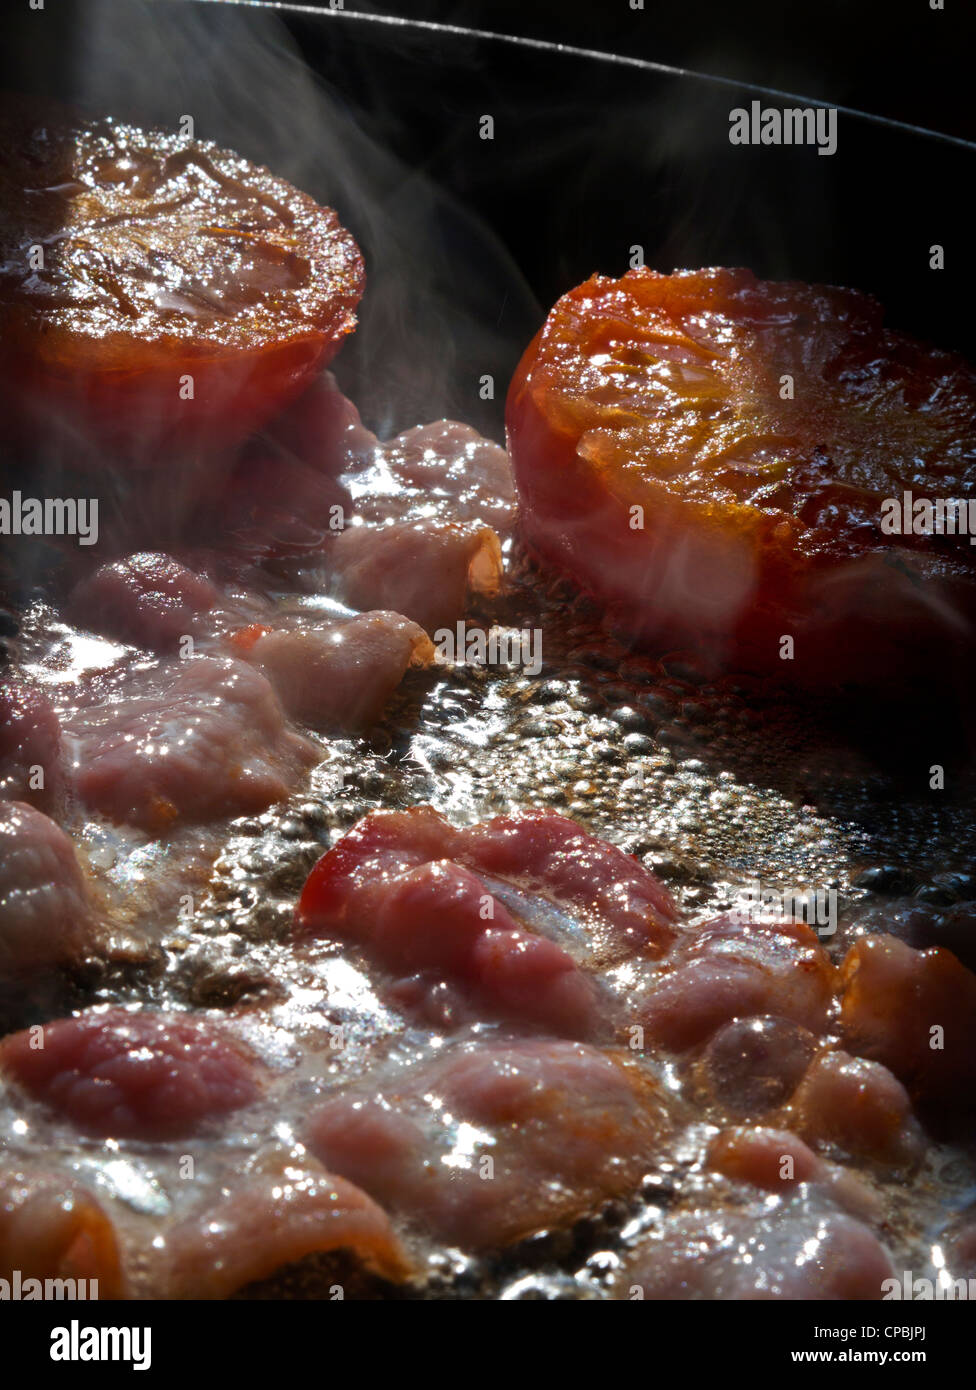 Albero del sole illumina il guanciale rashers e pomodori fritti in padella calda Foto Stock